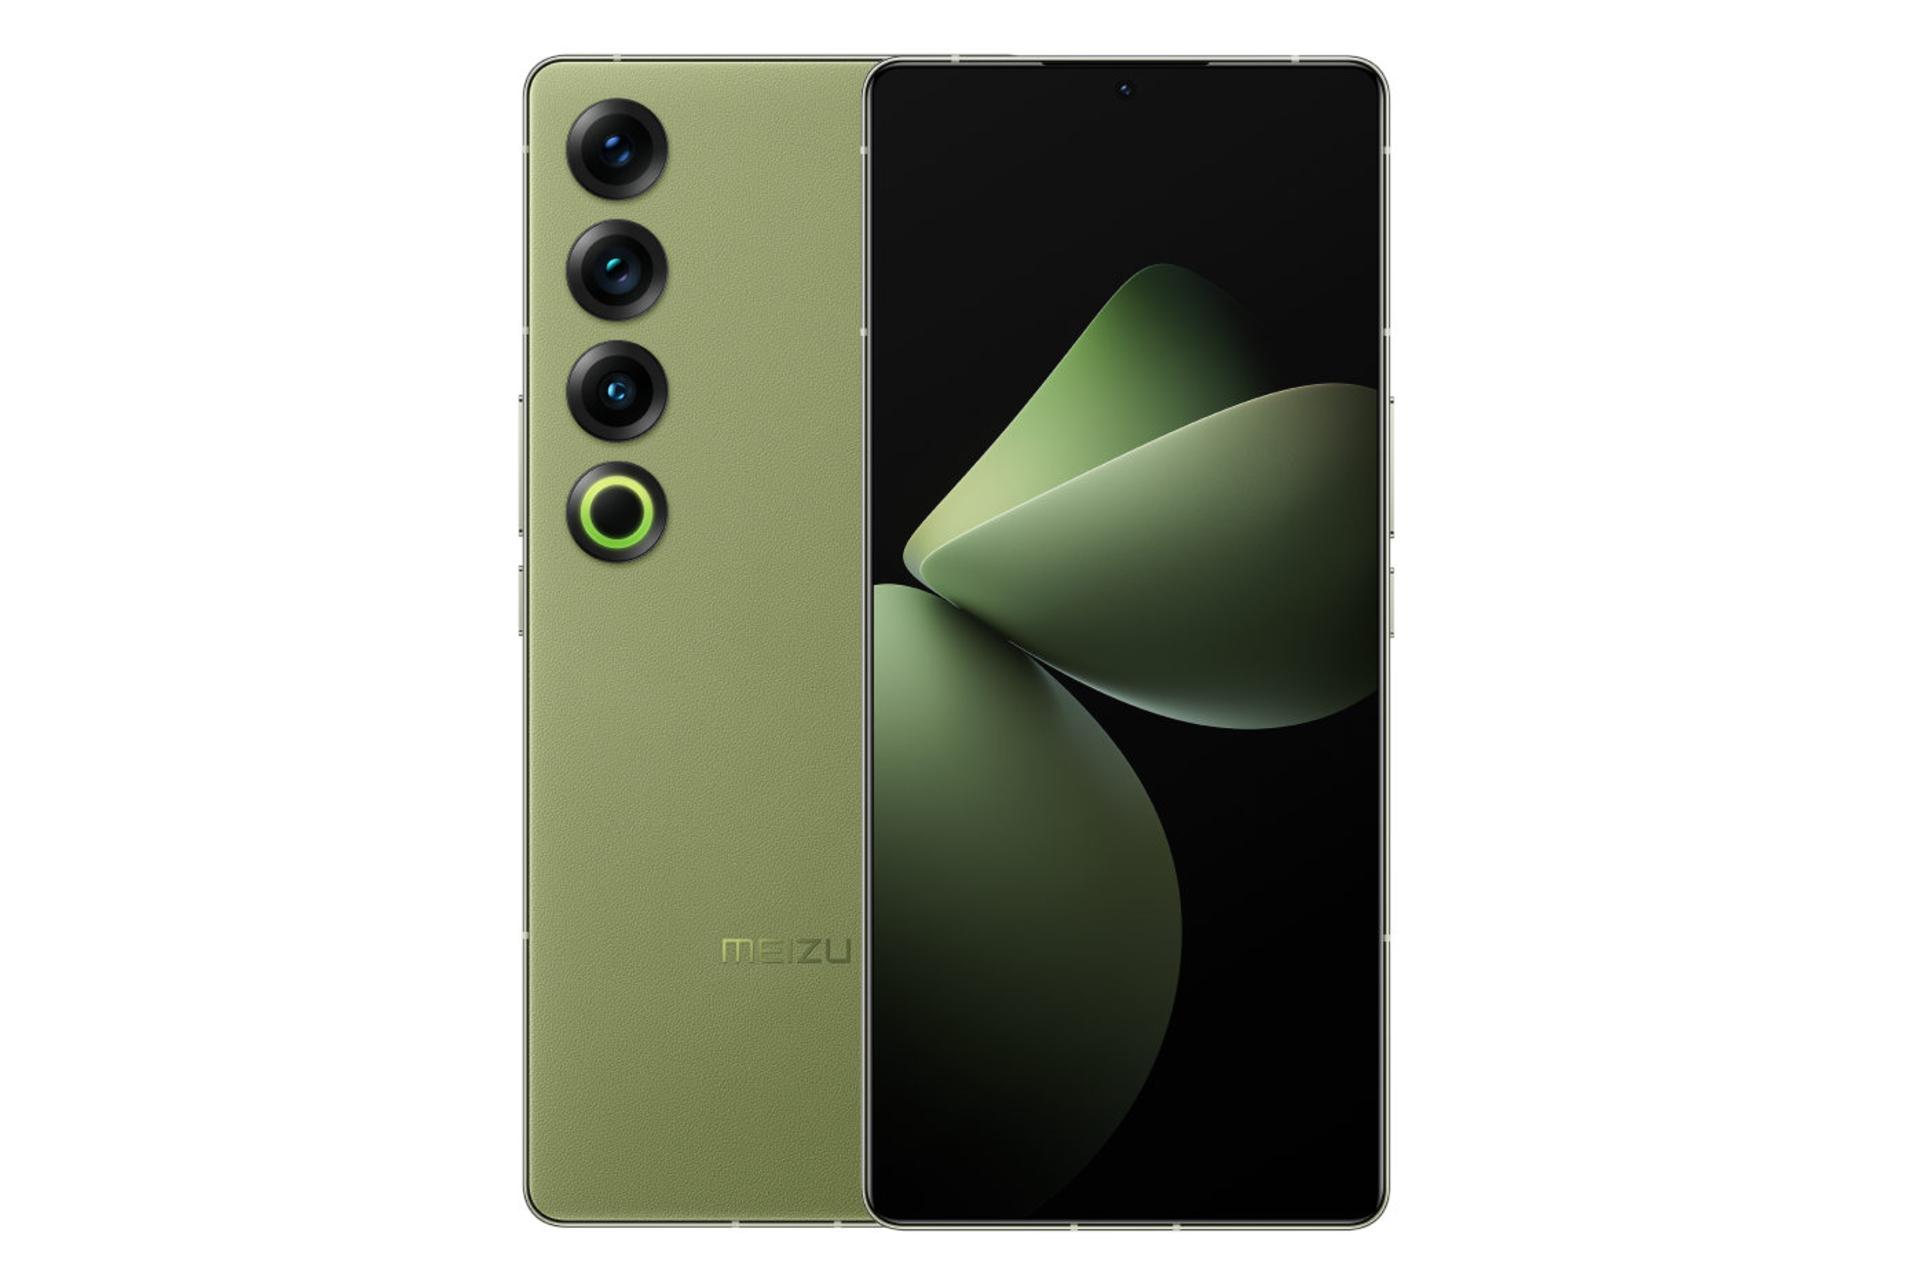 پنل جلو و پشت گوشی موبایل میزو 21 پرو سبز / Meizu 21 Pro